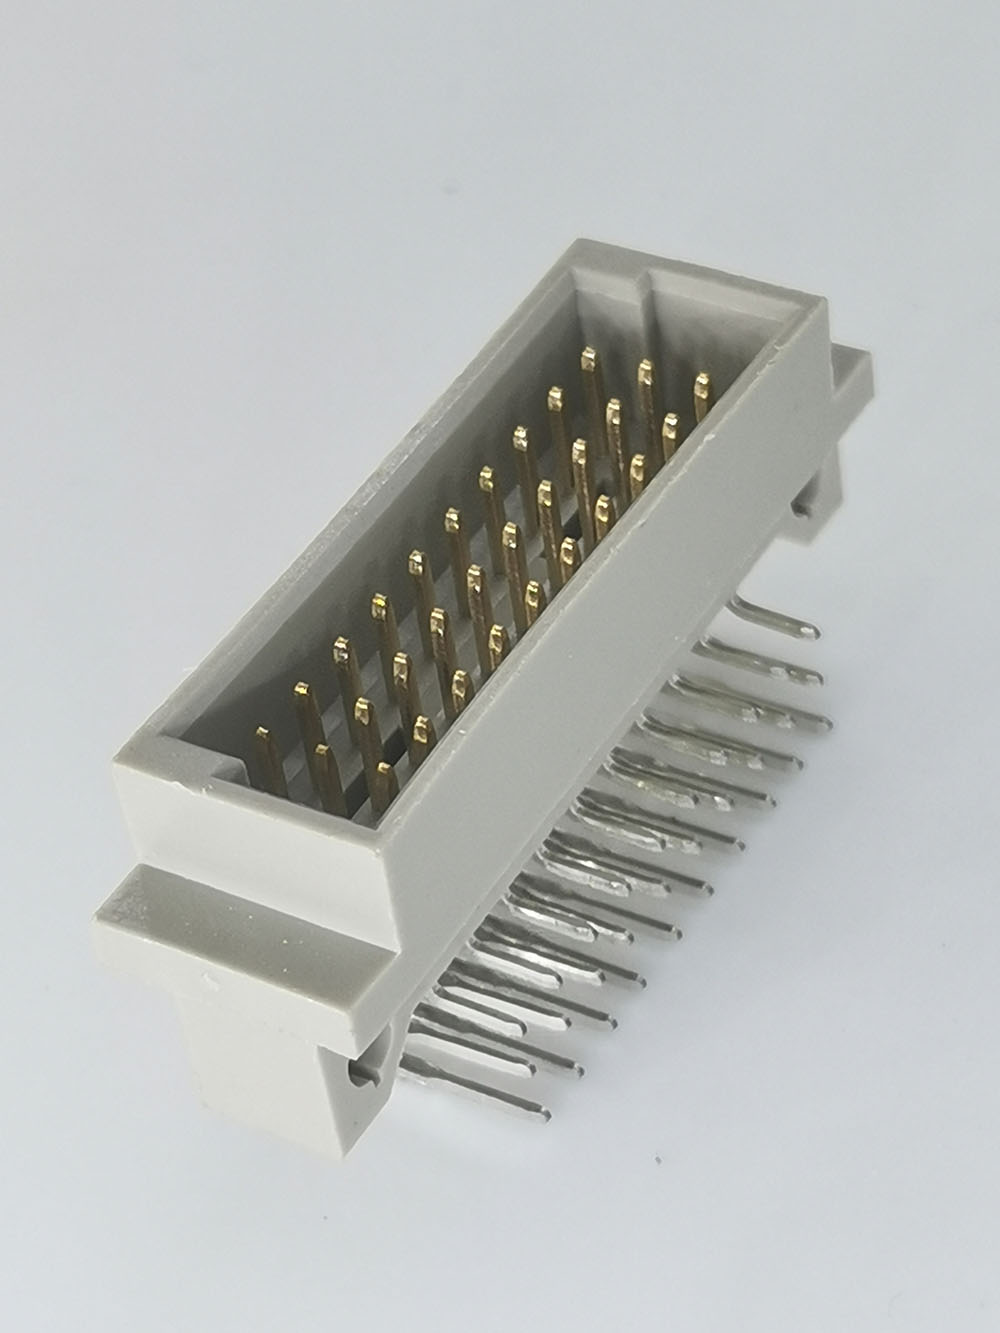 Conector de 30 piñinas tipo 1/3c DIN41612